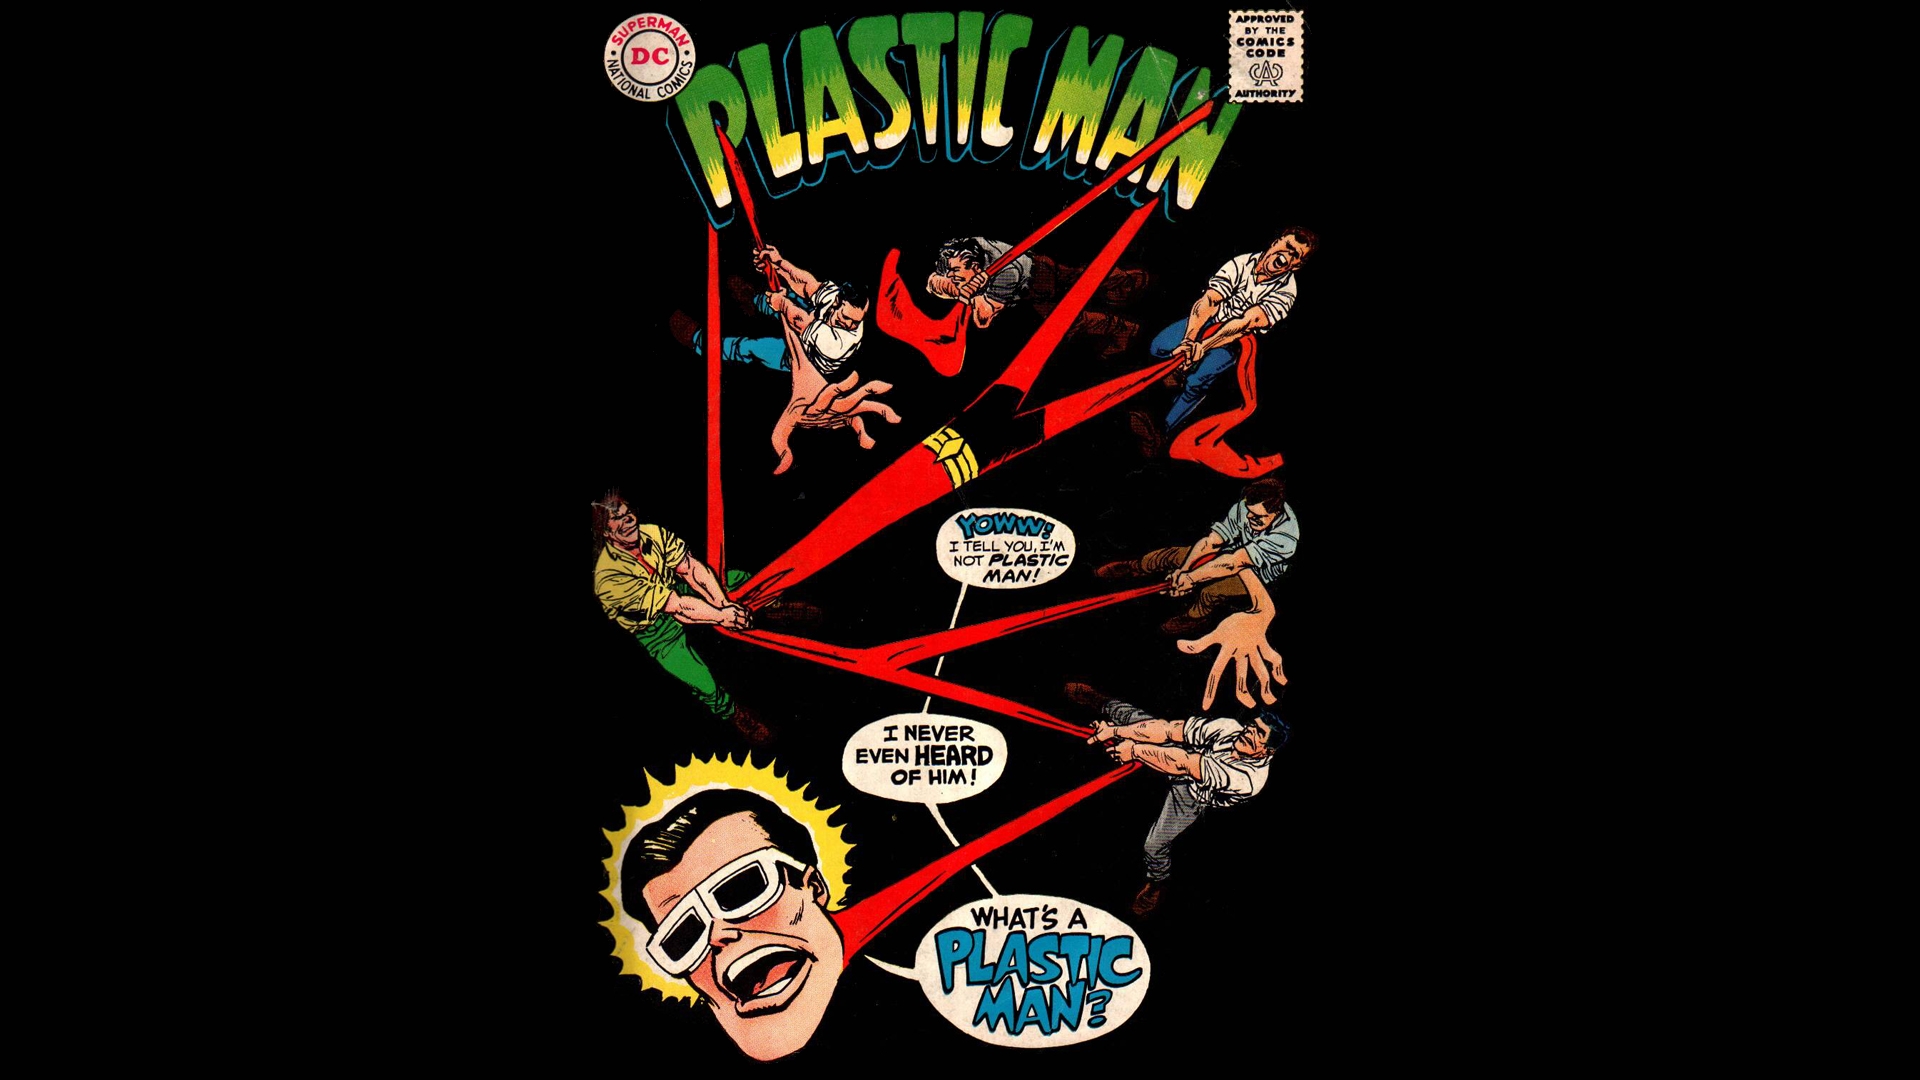 625475 descargar imagen historietas, the plastic man comedy/adventure show: fondos de pantalla y protectores de pantalla gratis